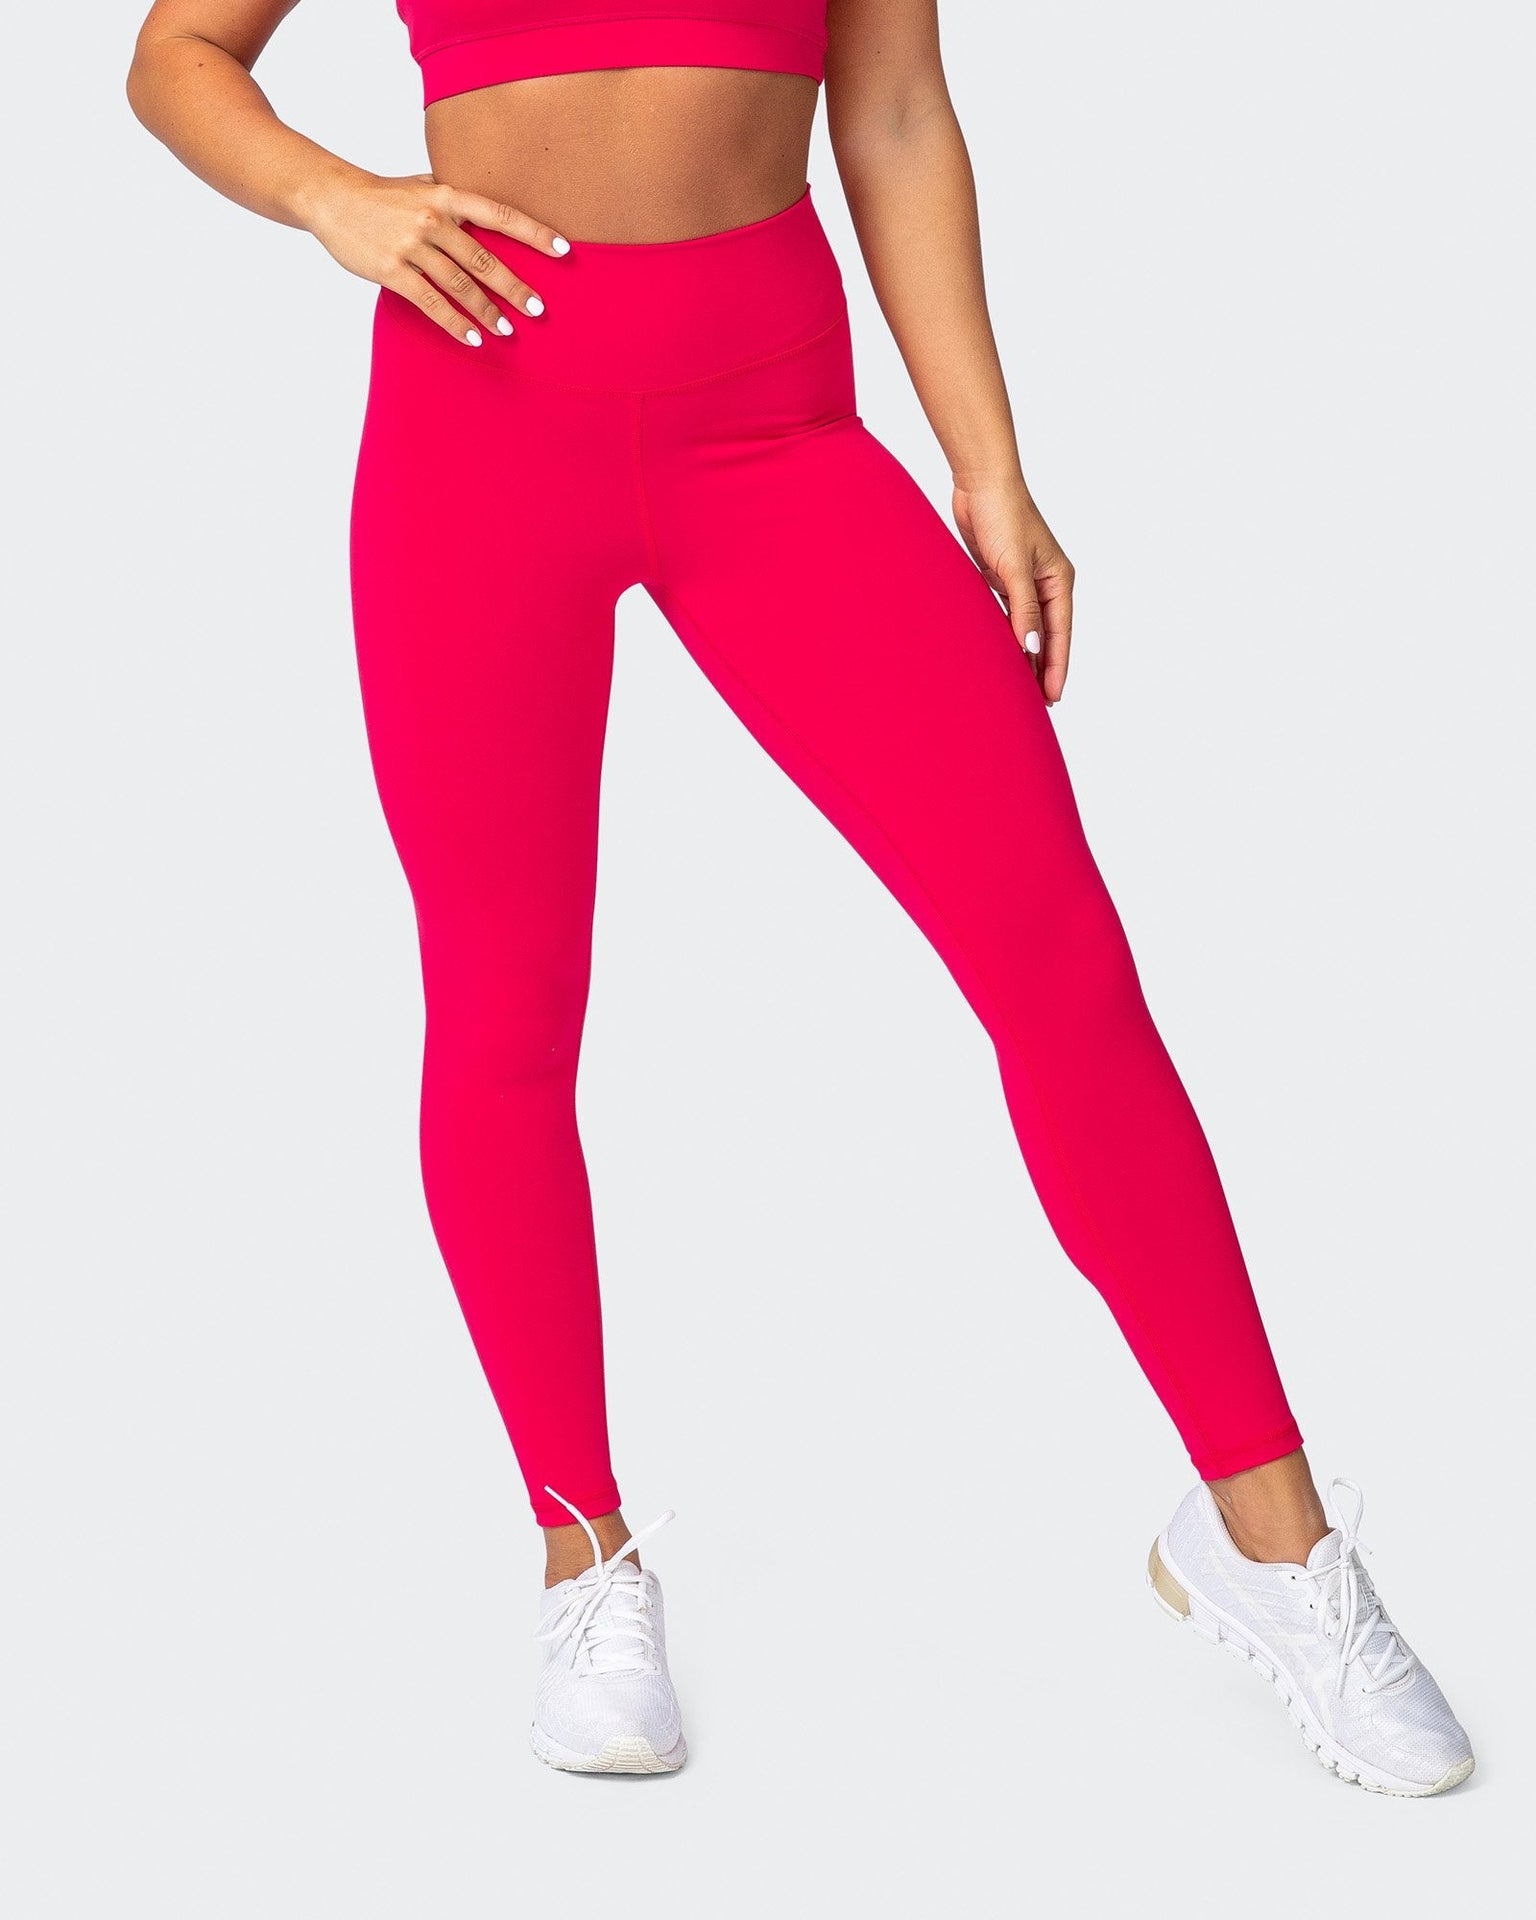 Wholesale Hot Pink Textured Scrunch Butt Gym Leggings